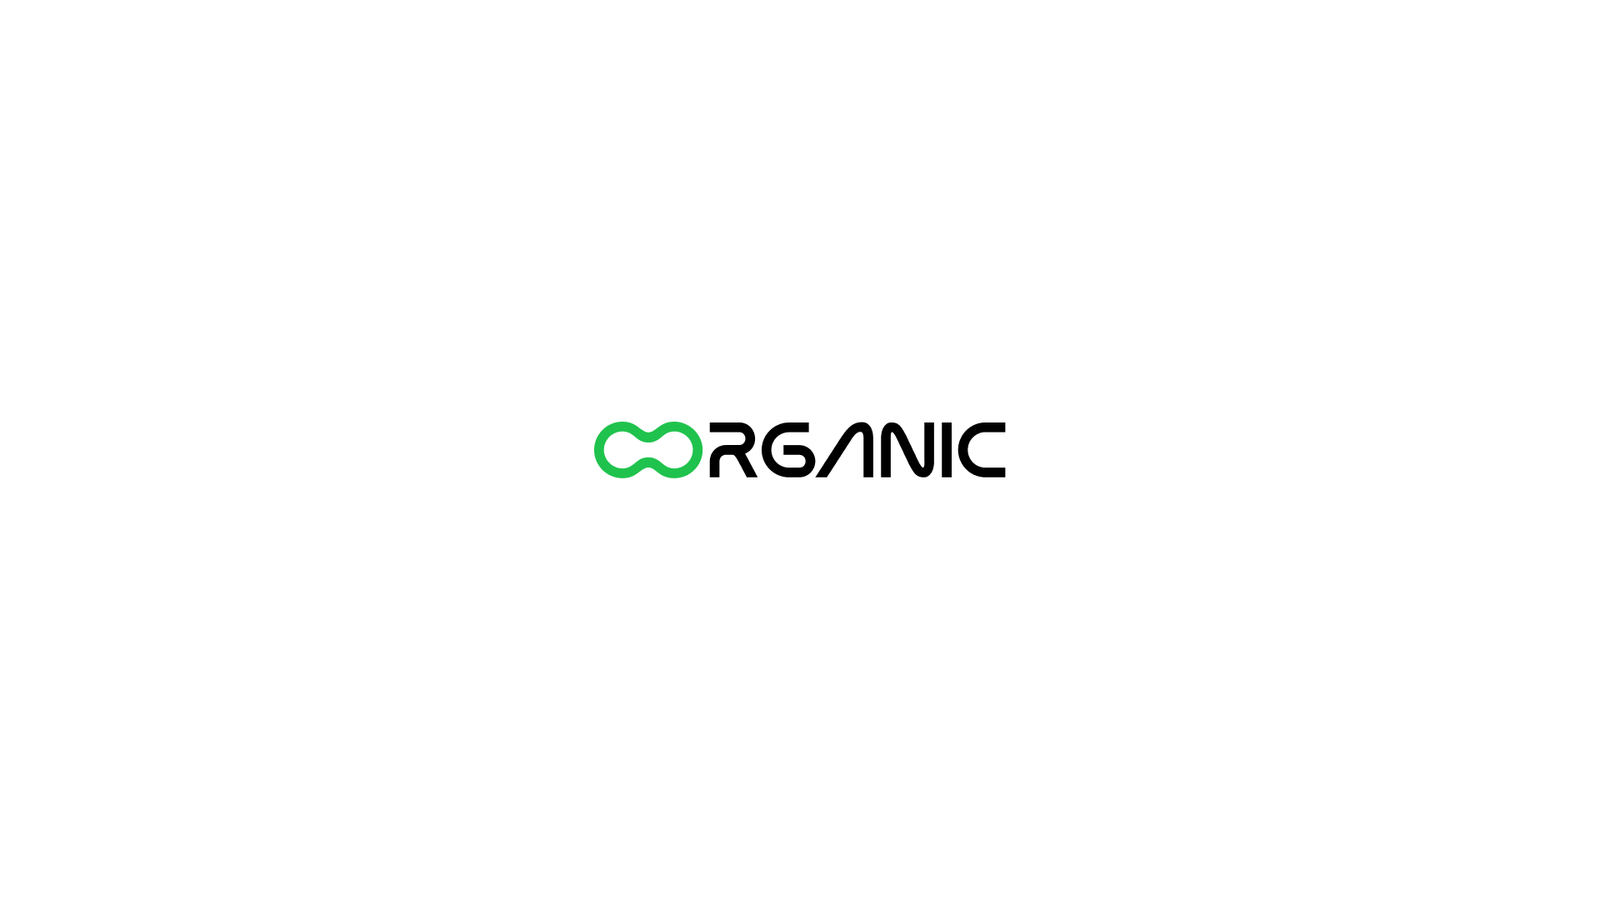 Essa imagem leva o logo de um cliente do ramo de organicos da agência noneone